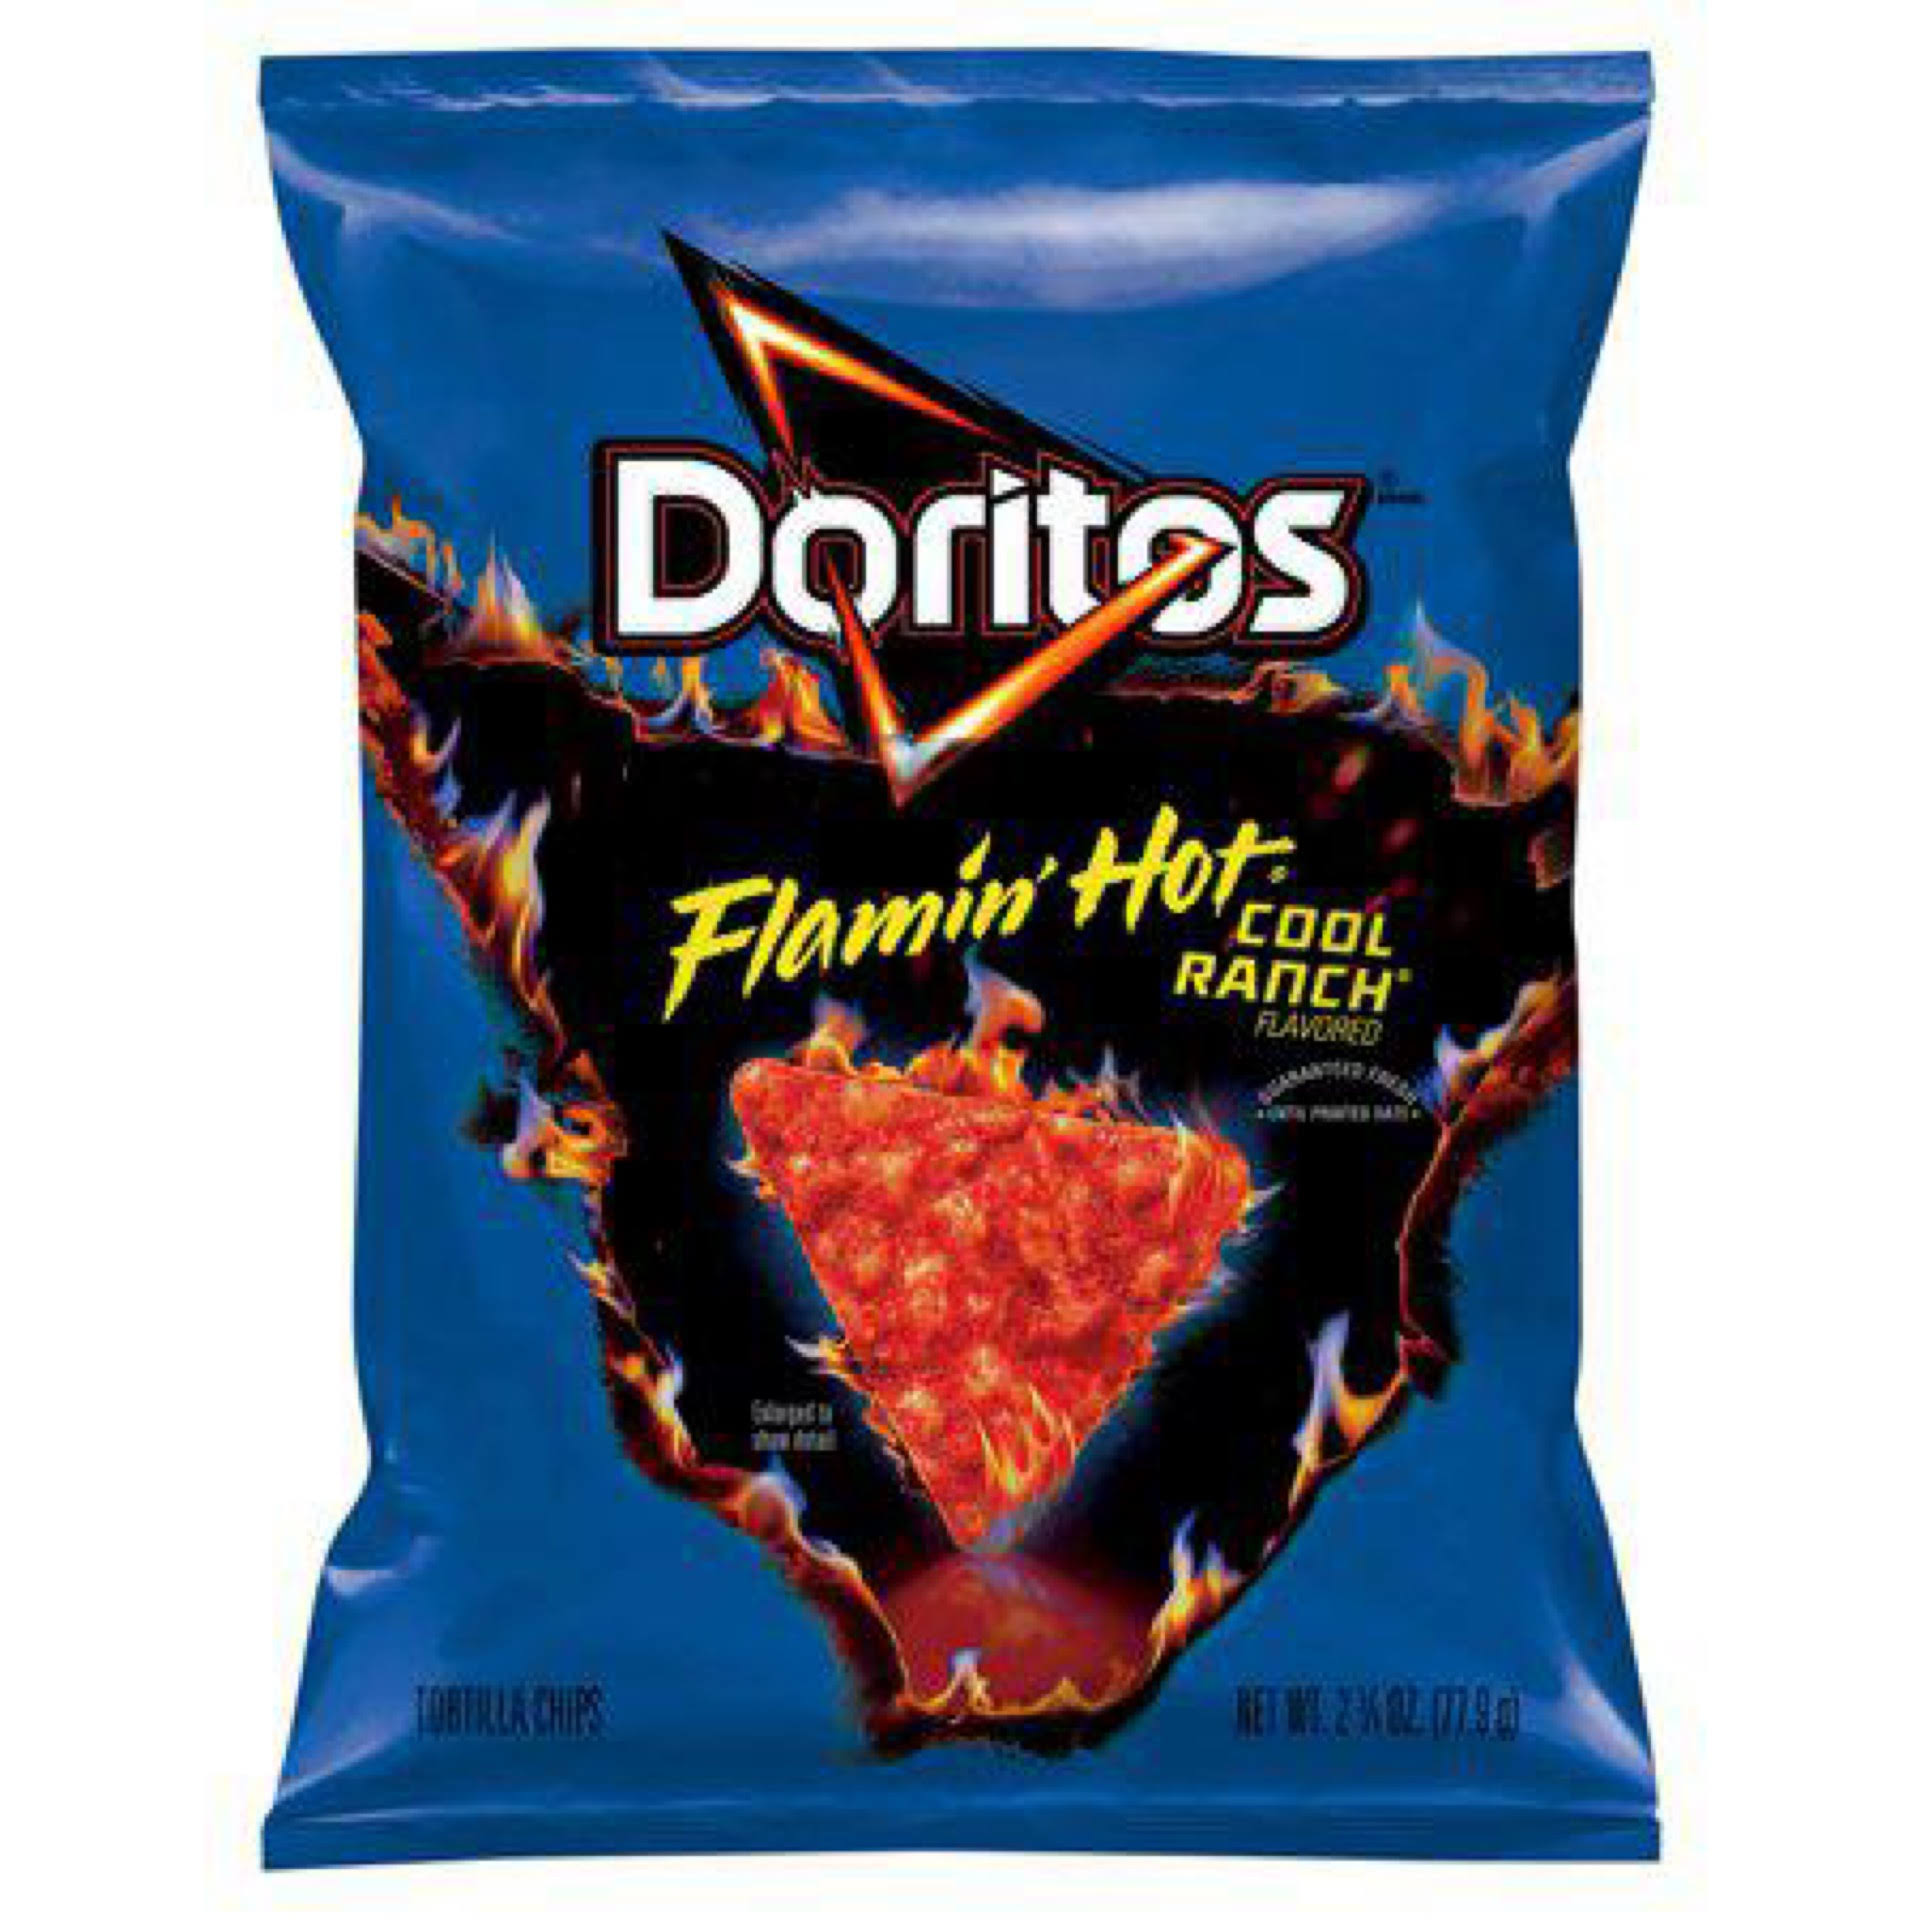 Doritos Flamin' Hot Tortilla Chips, Cool Ranch Flavored - 2.75 oz